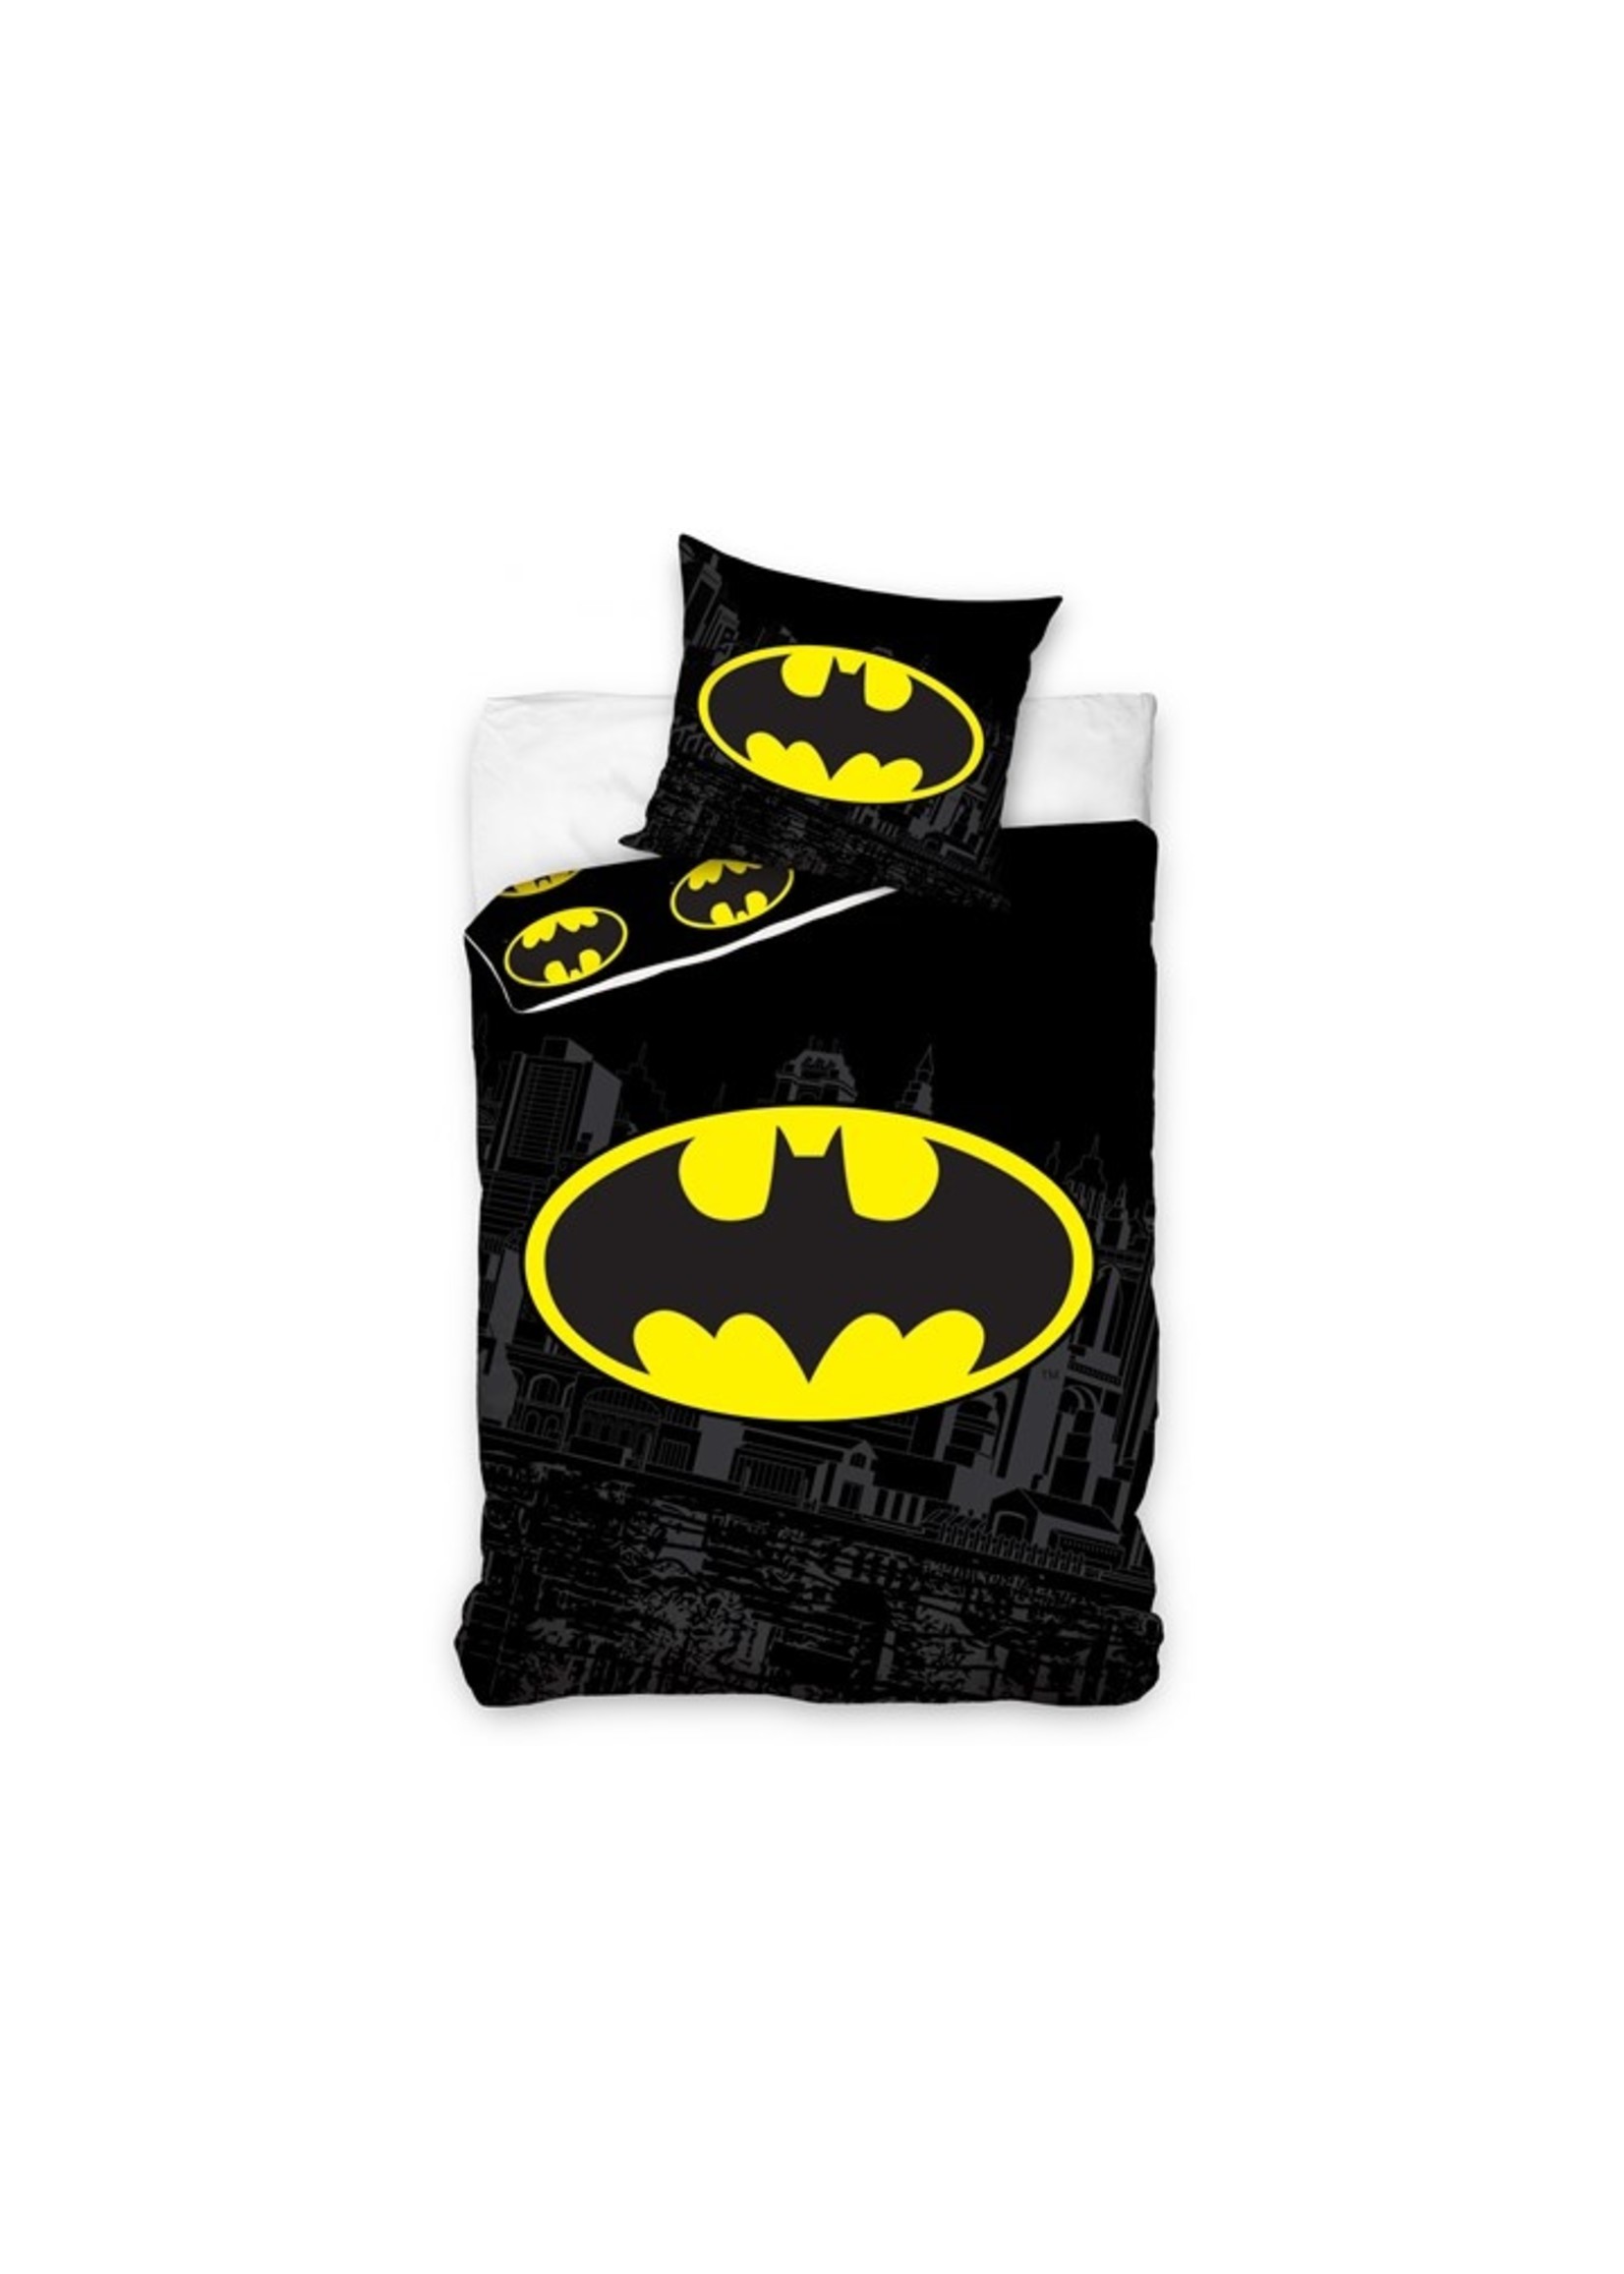 DC Comics Batman Duvet Cover Set Black